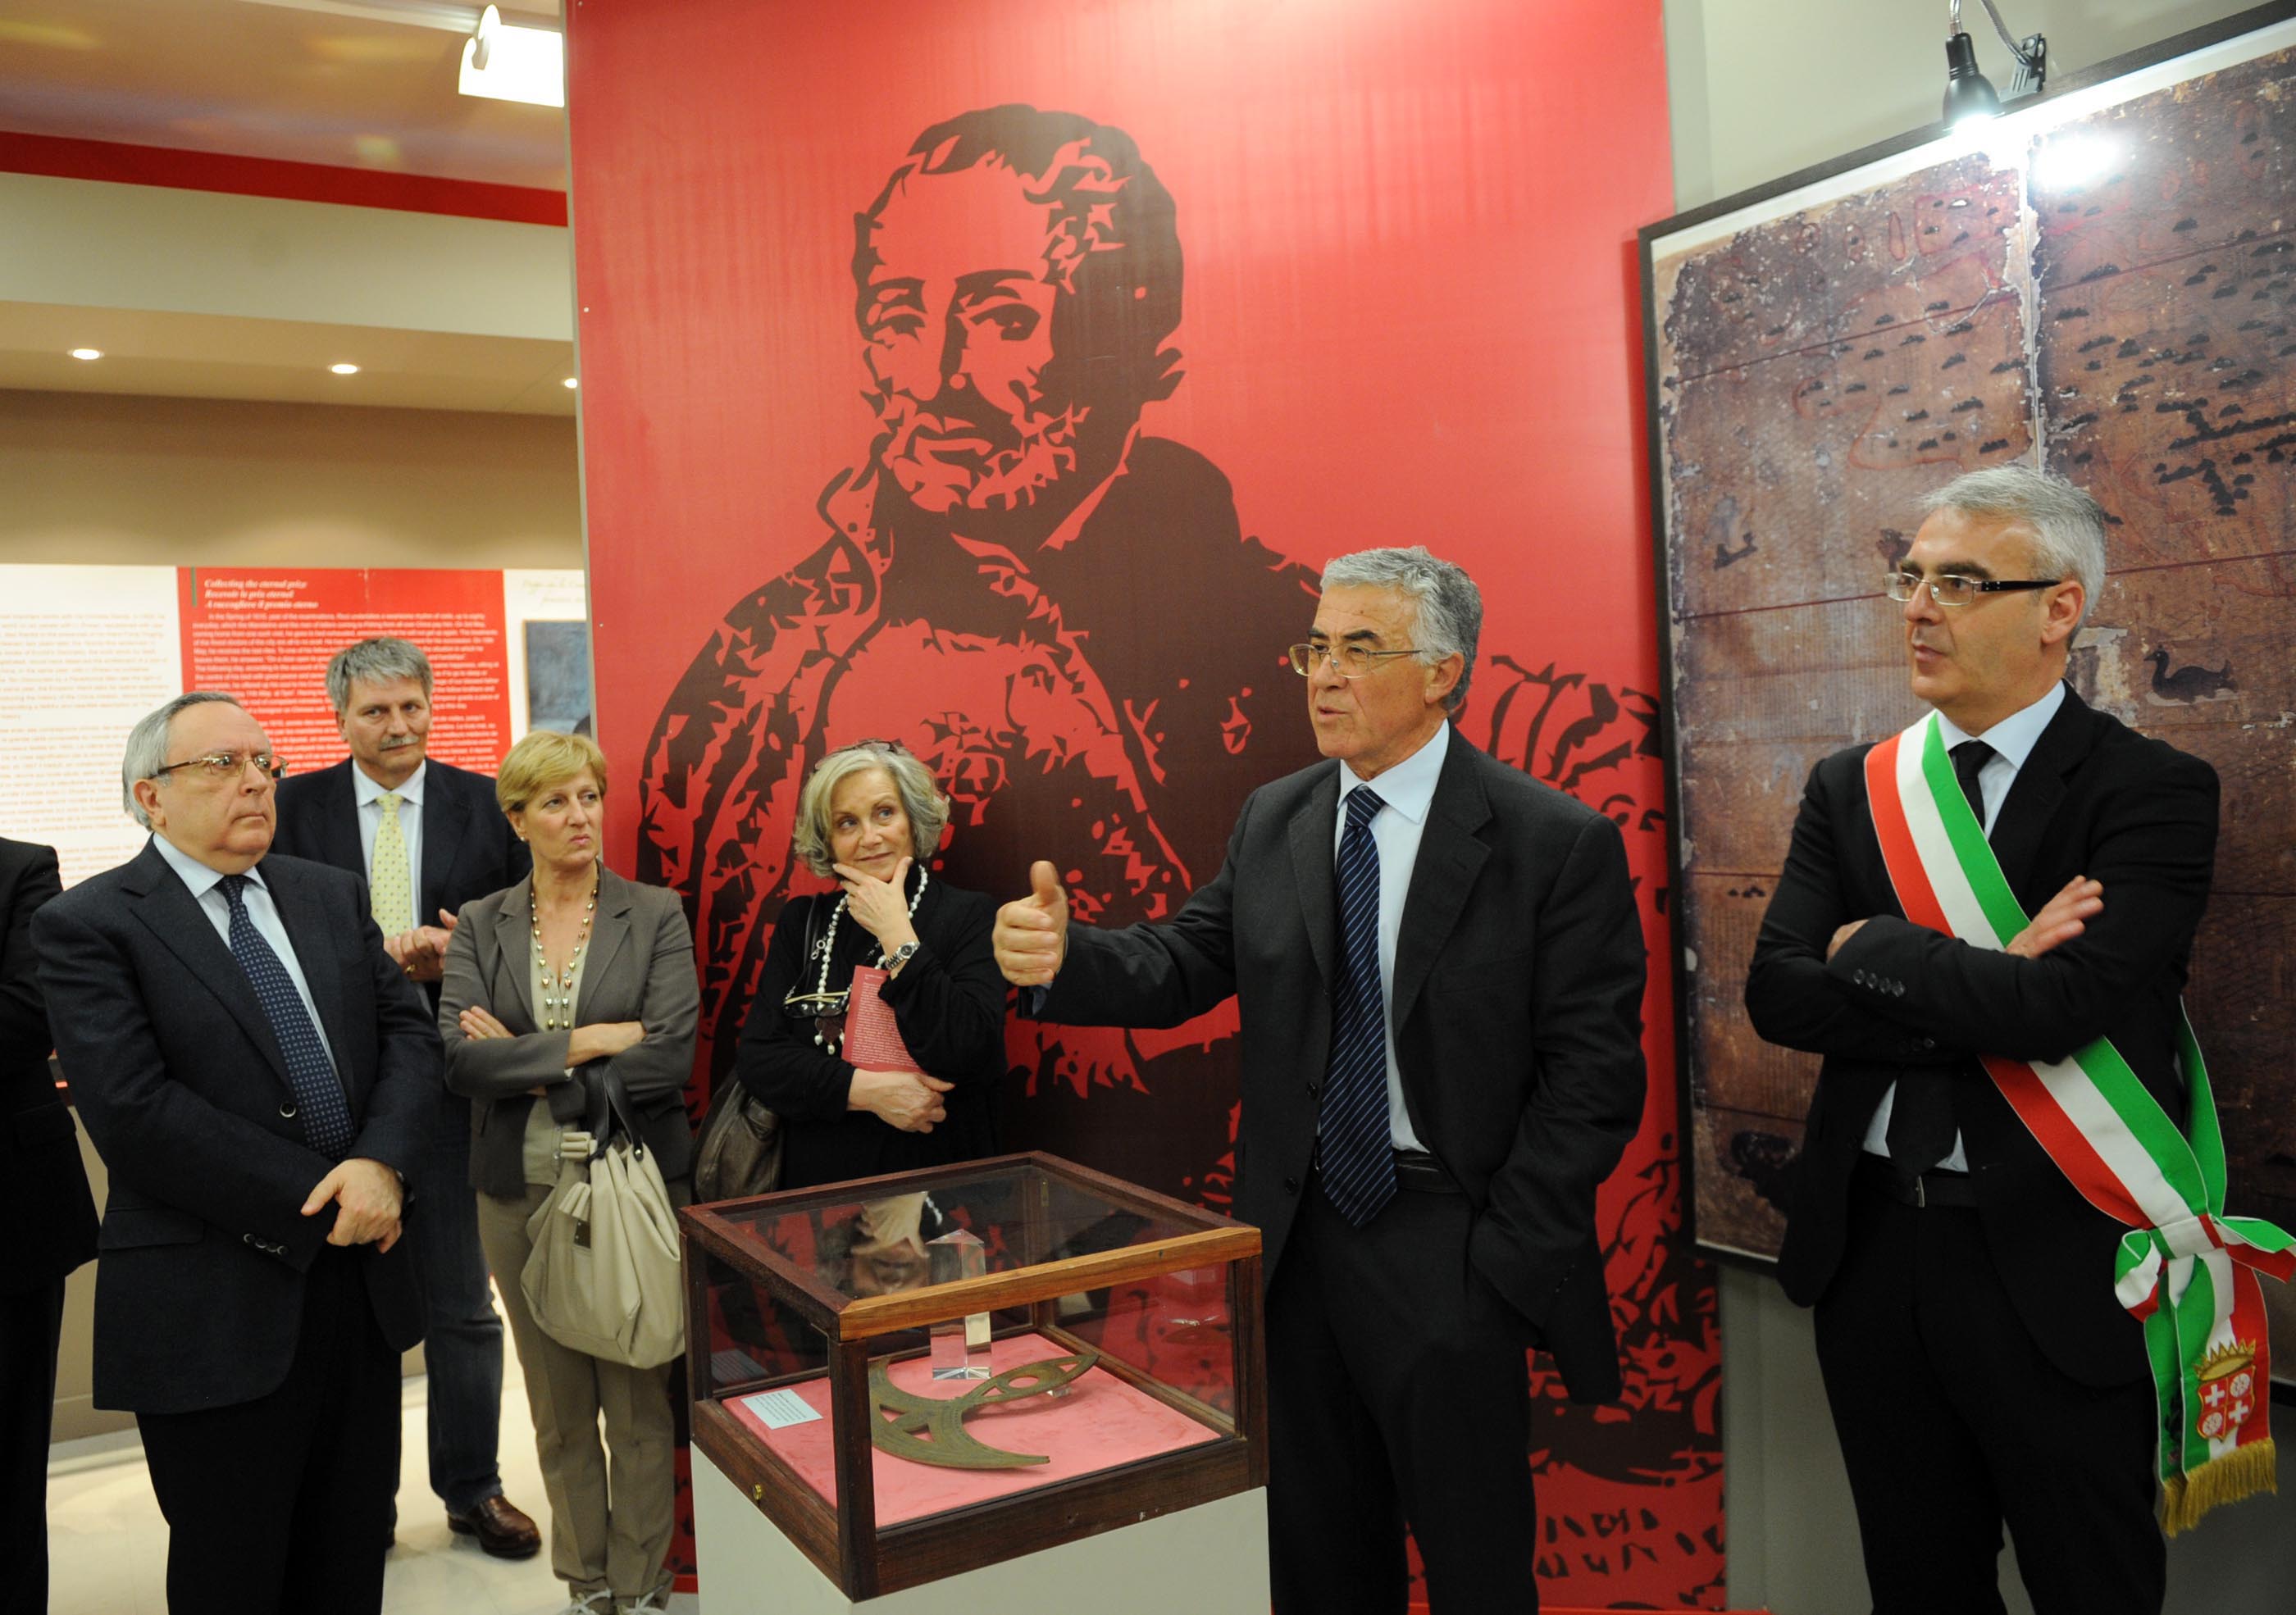 Cultura. A Macerata un’esposizione permanente su padre Matteo Ricci, ambasciatore d’Europa in Cina